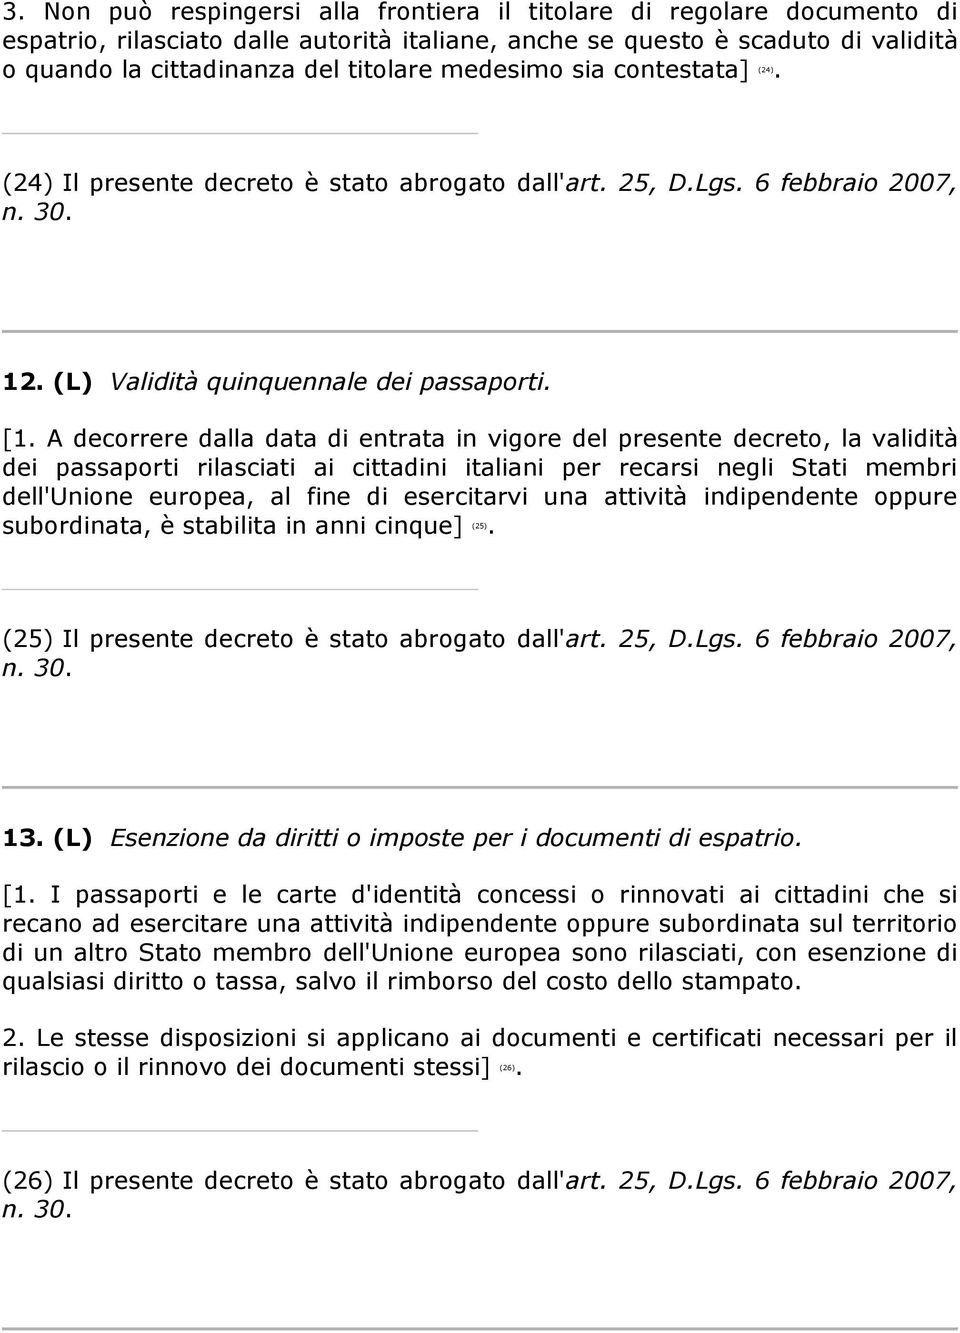 A decorrere dalla data di entrata in vigore del presente decreto, la validità dei passaporti rilasciati ai cittadini italiani per recarsi negli Stati membri dell'unione europea, al fine di